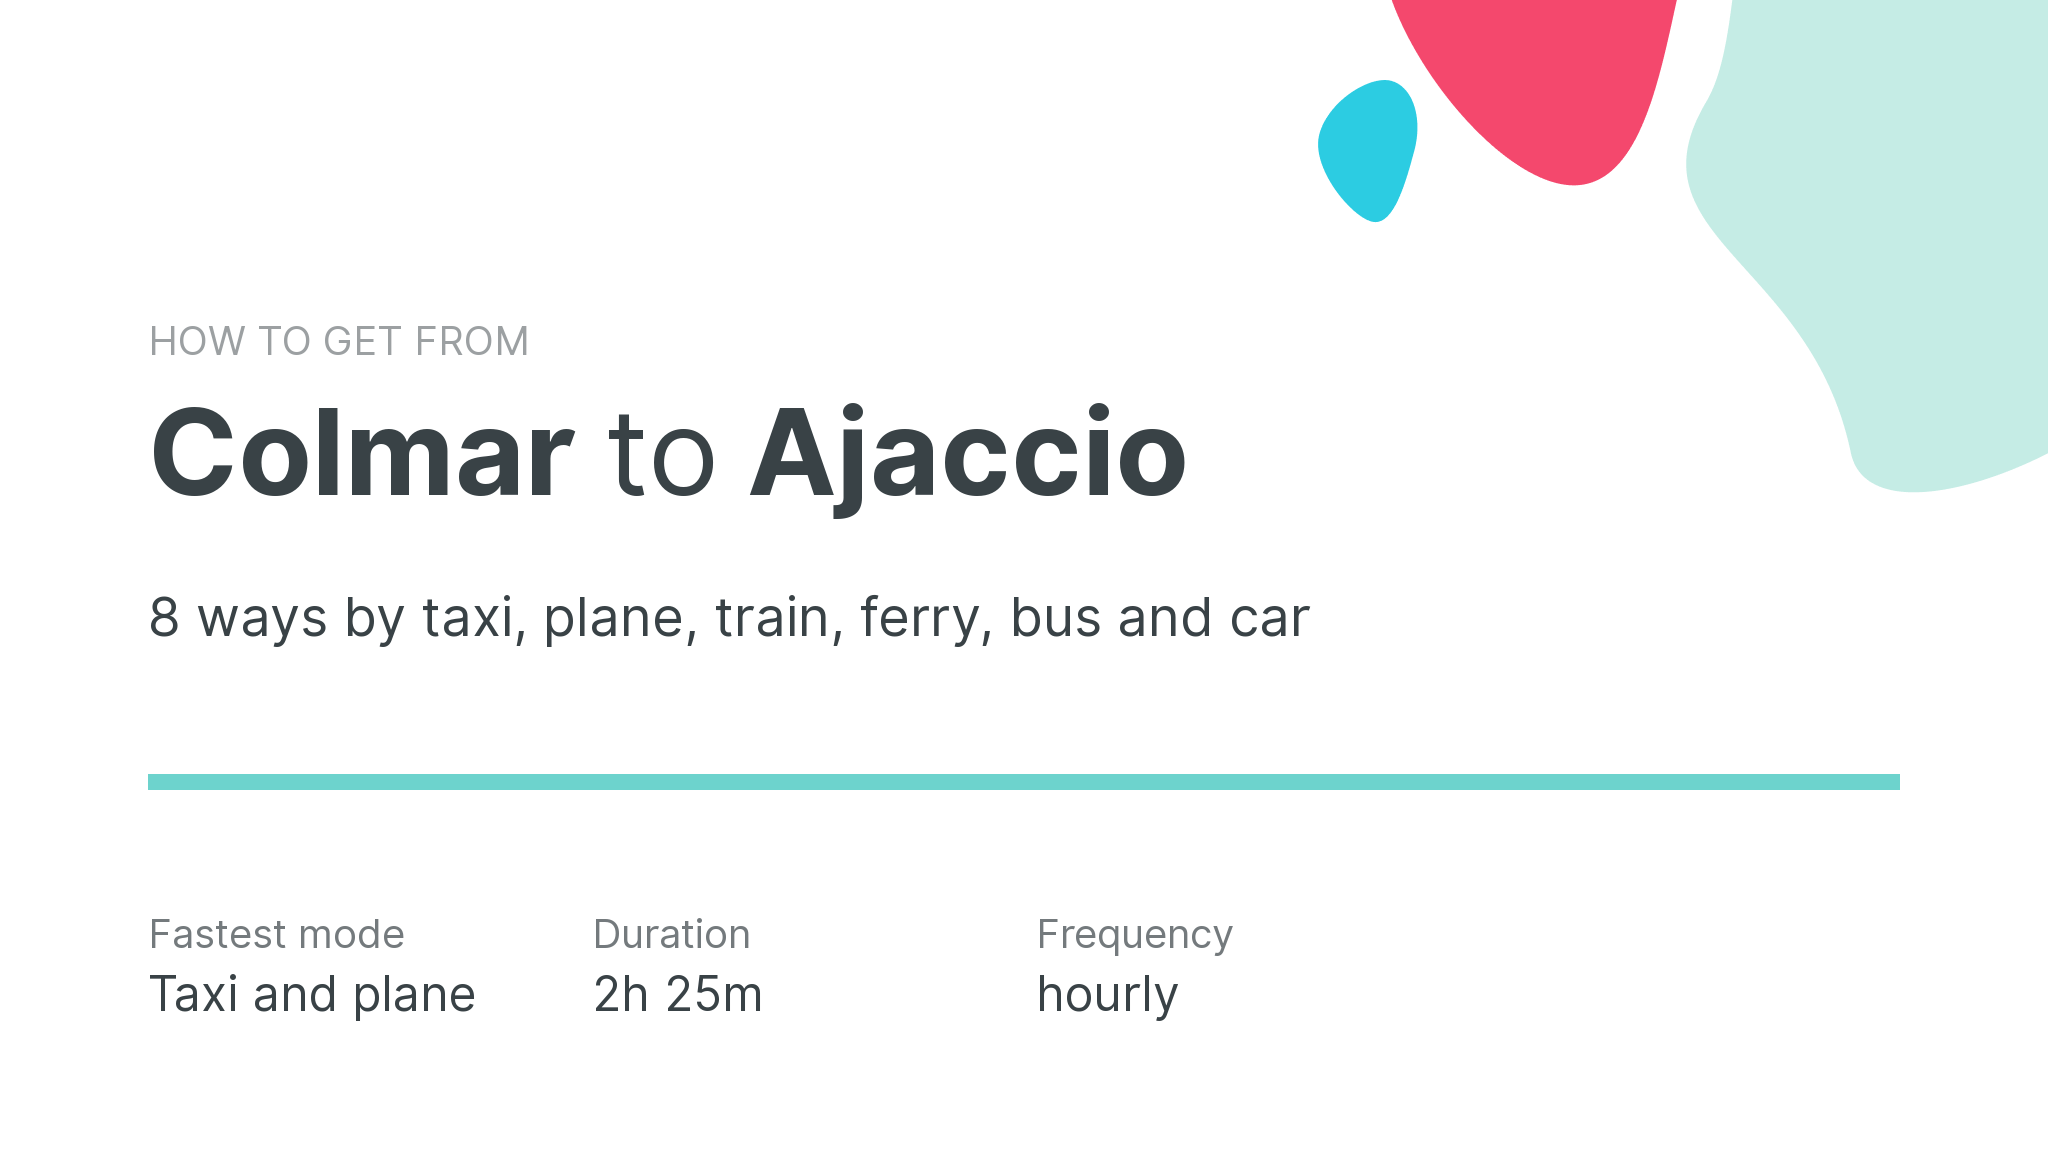 How do I get from Colmar to Ajaccio